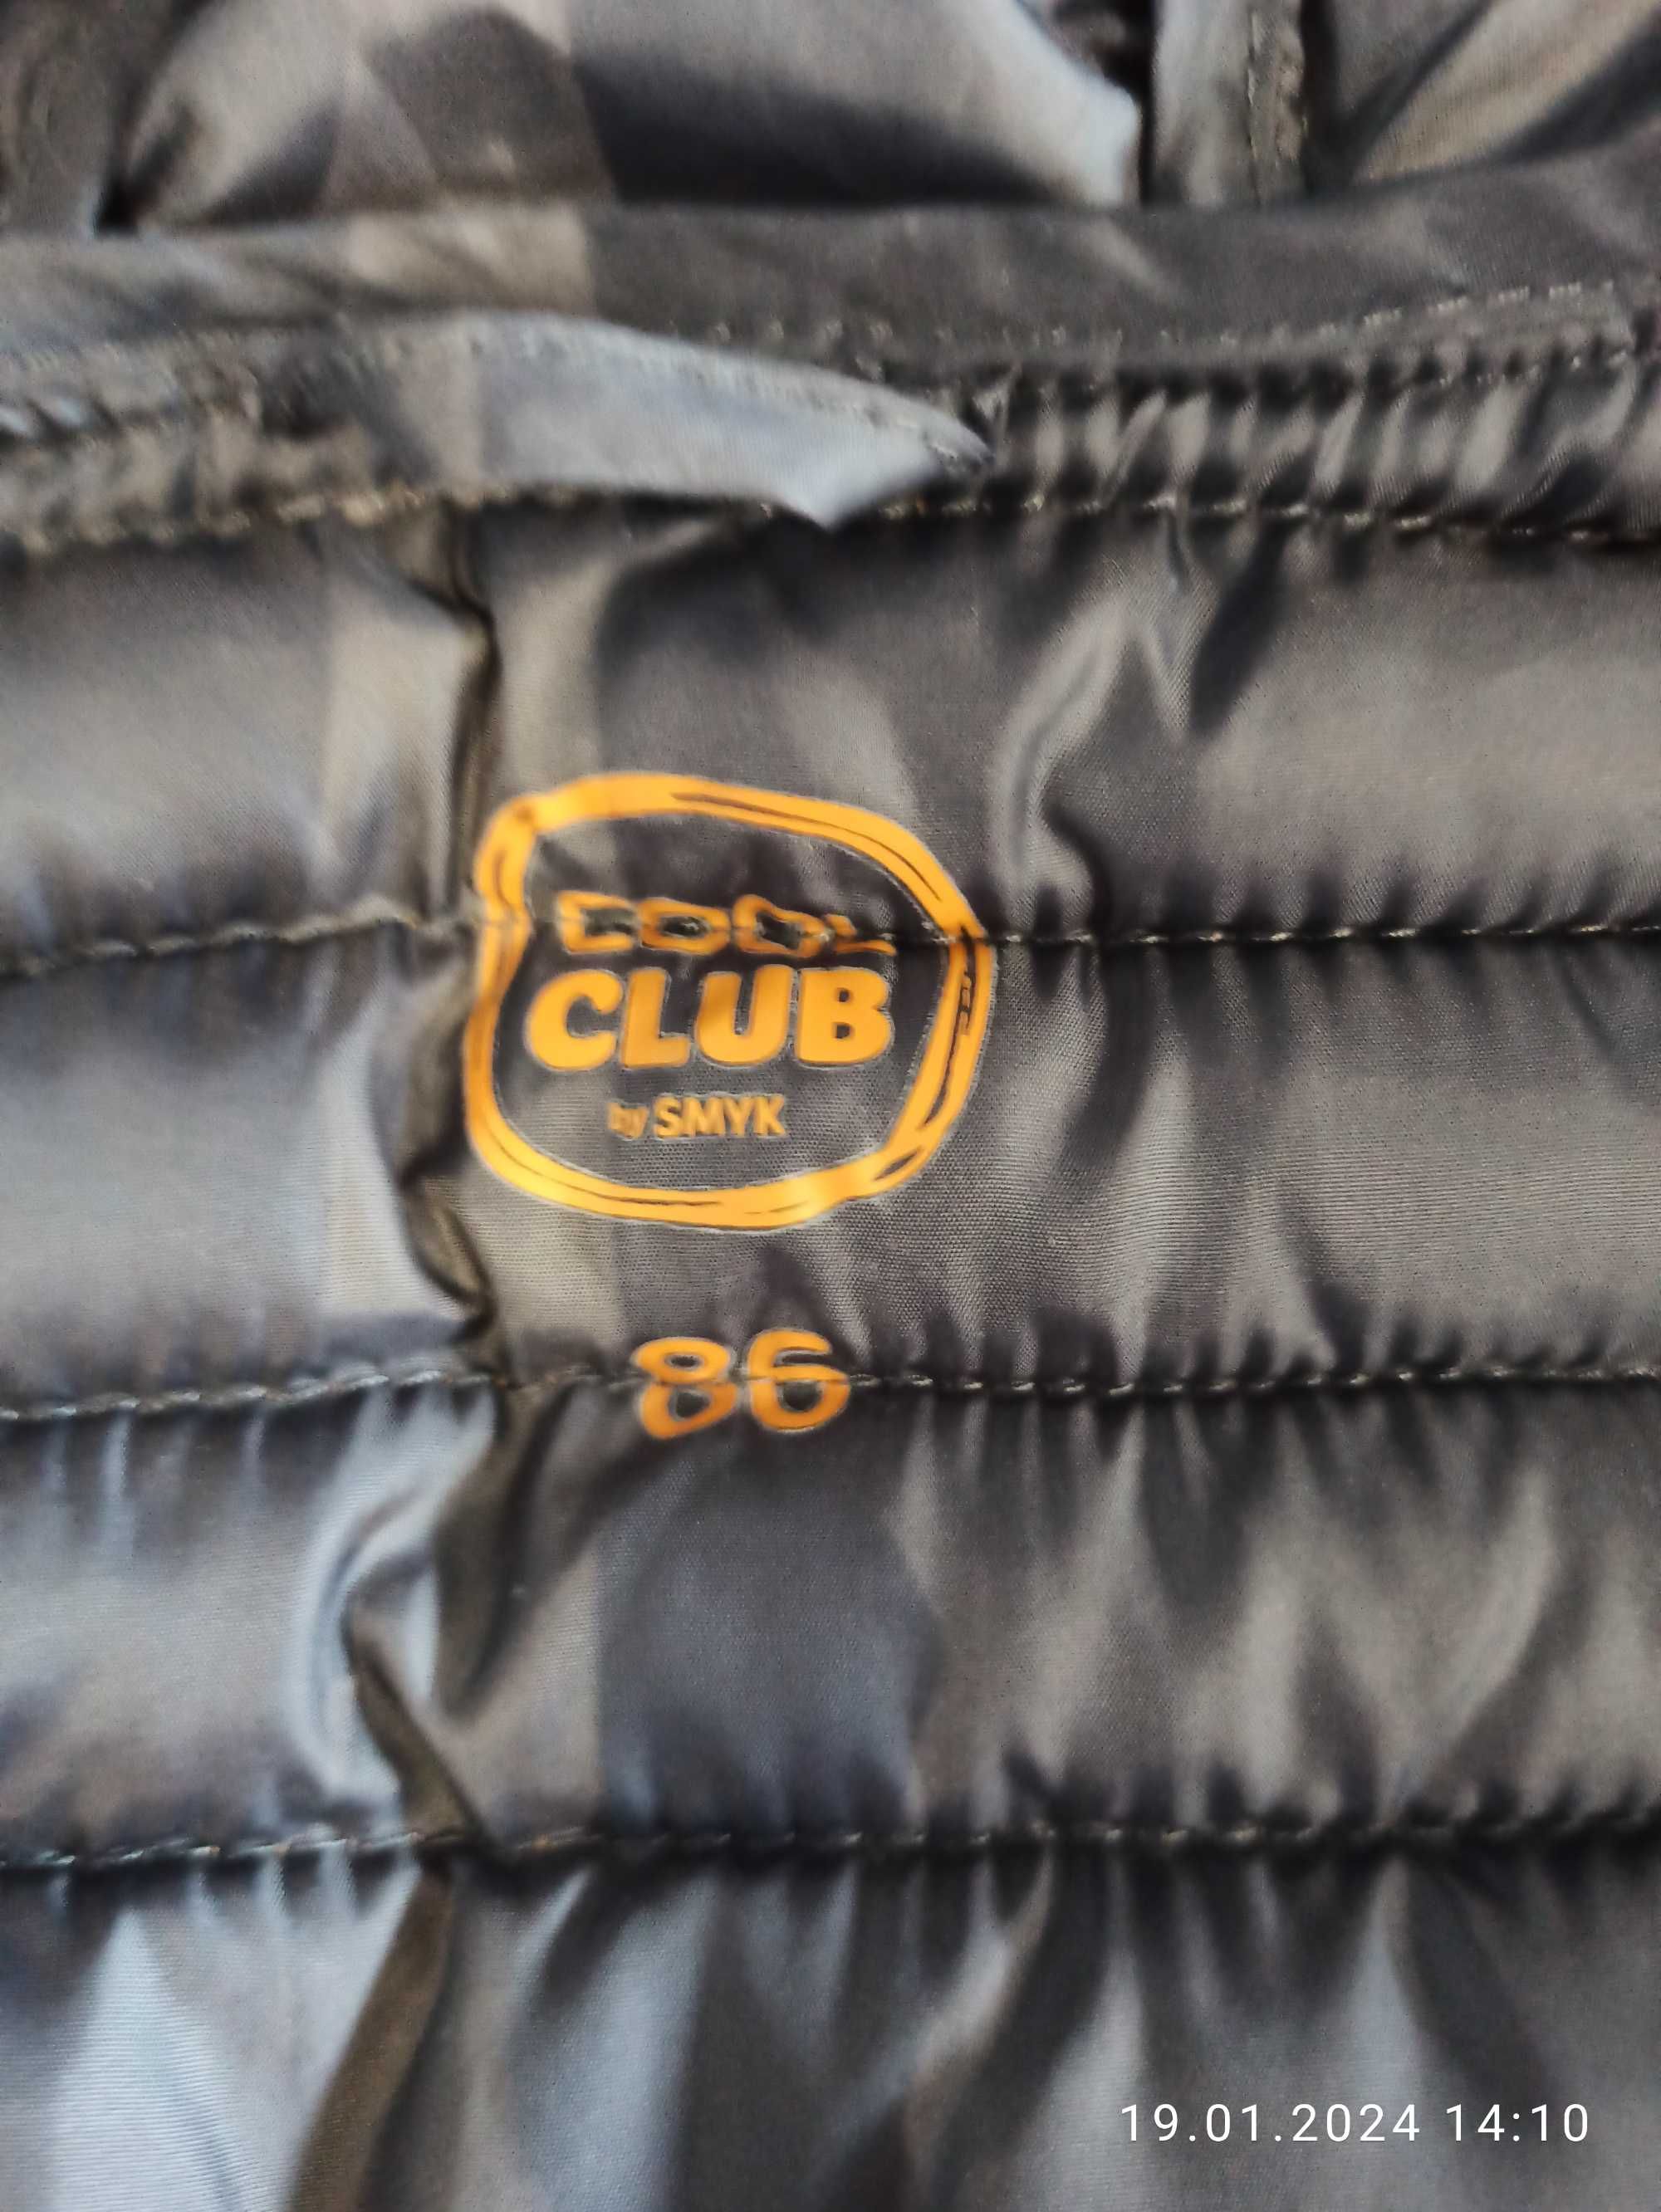 Sprzedam kurtka chłopięca zimowo-jesienna Cool Club Smyk rozmiar 86